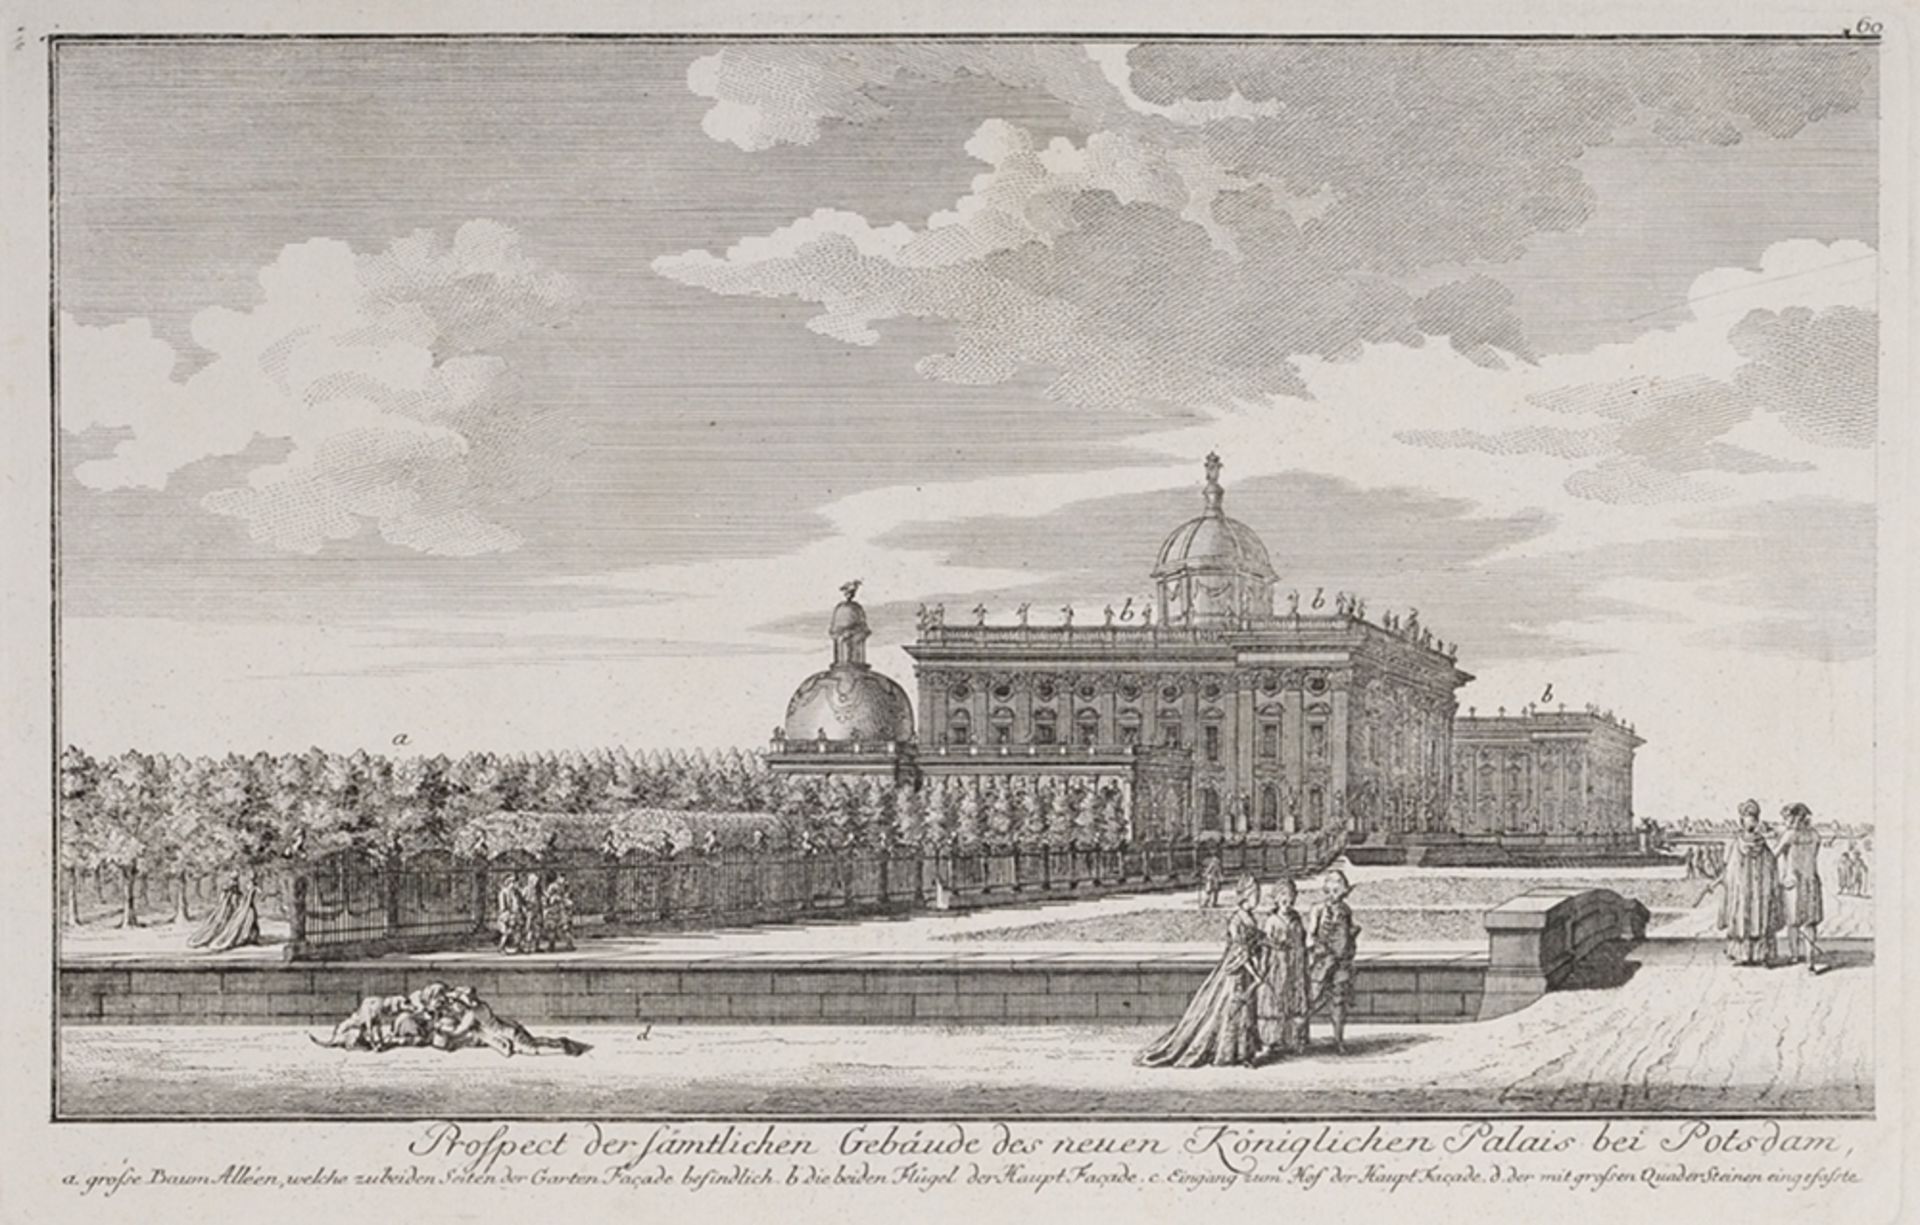 Schleuen, Johann David(Berlin 1711 - 1771) Kupferstich. "Prospect der sämtlichen Gebäude de